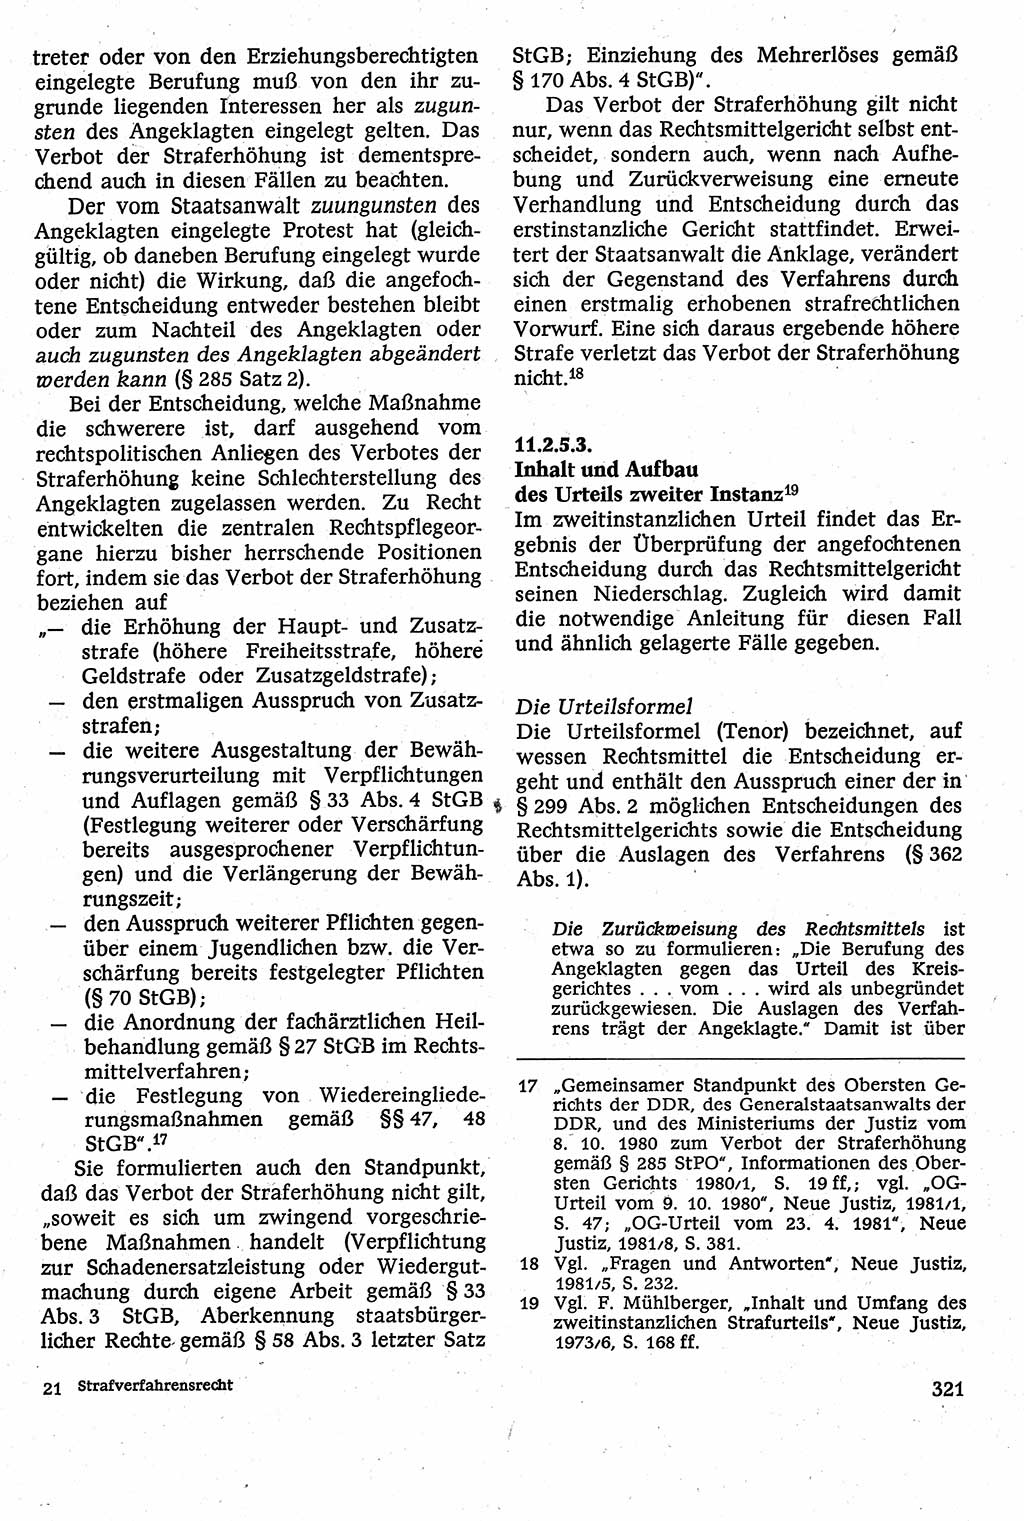 Strafverfahrensrecht [Deutsche Demokratische Republik (DDR)], Lehrbuch 1982, Seite 321 (Strafverf.-R. DDR Lb. 1982, S. 321)